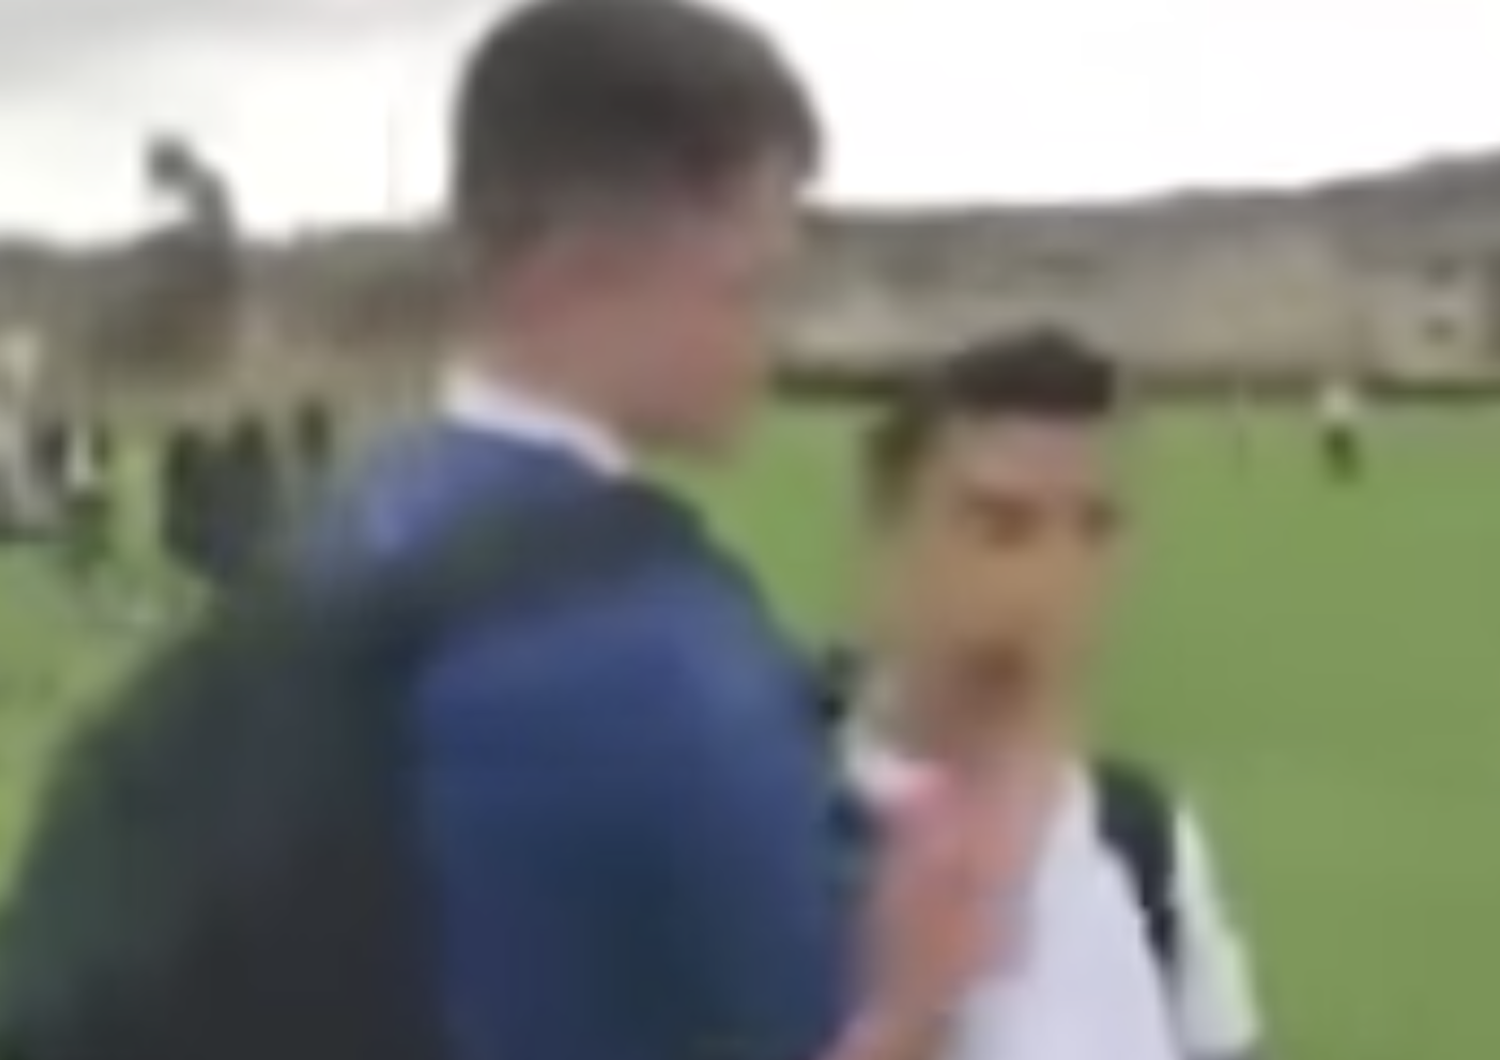 Un video di due fratelli siriani&nbsp;bullizzati&nbsp;a scuola scuote la Gran Bretagna&nbsp;